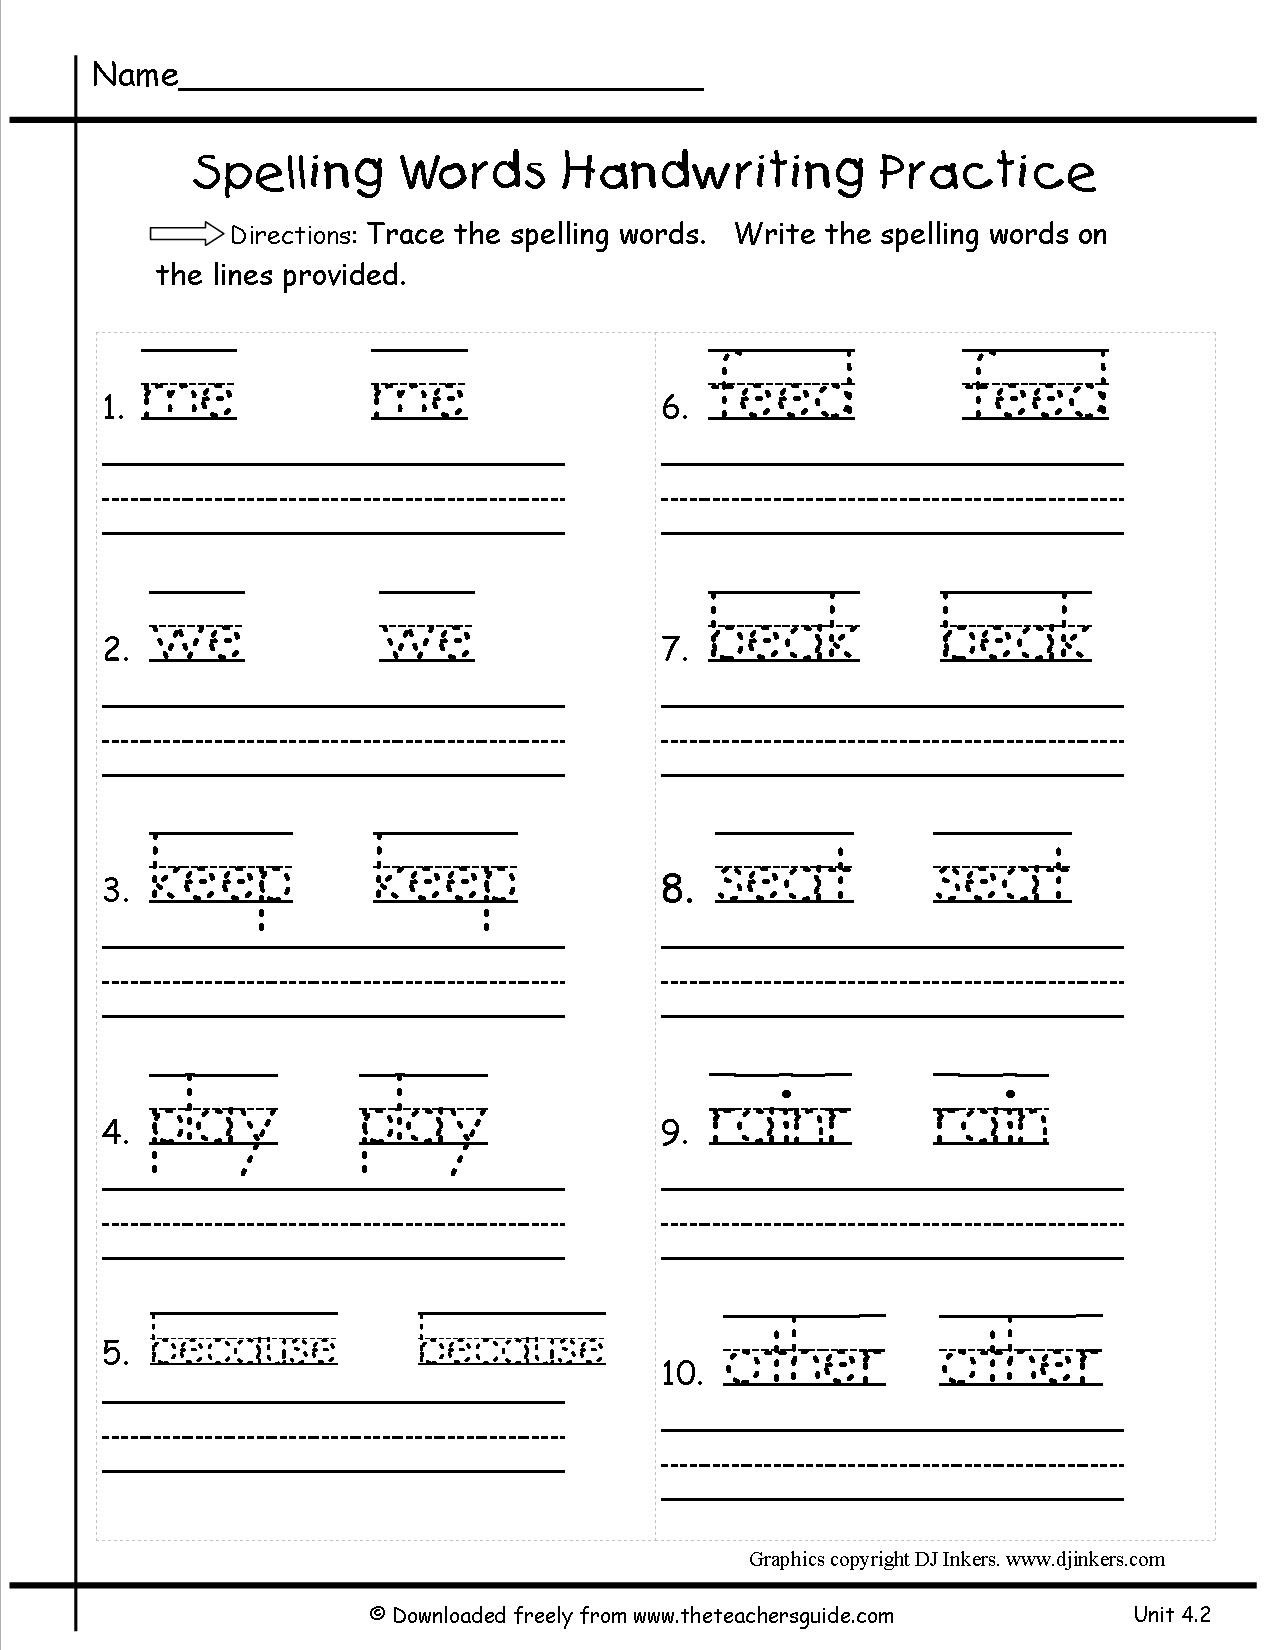 Worksheet : Free Printable Language Arts Worksheets For 1St Grade - Free Printable Language Arts Worksheets For 1St Grade